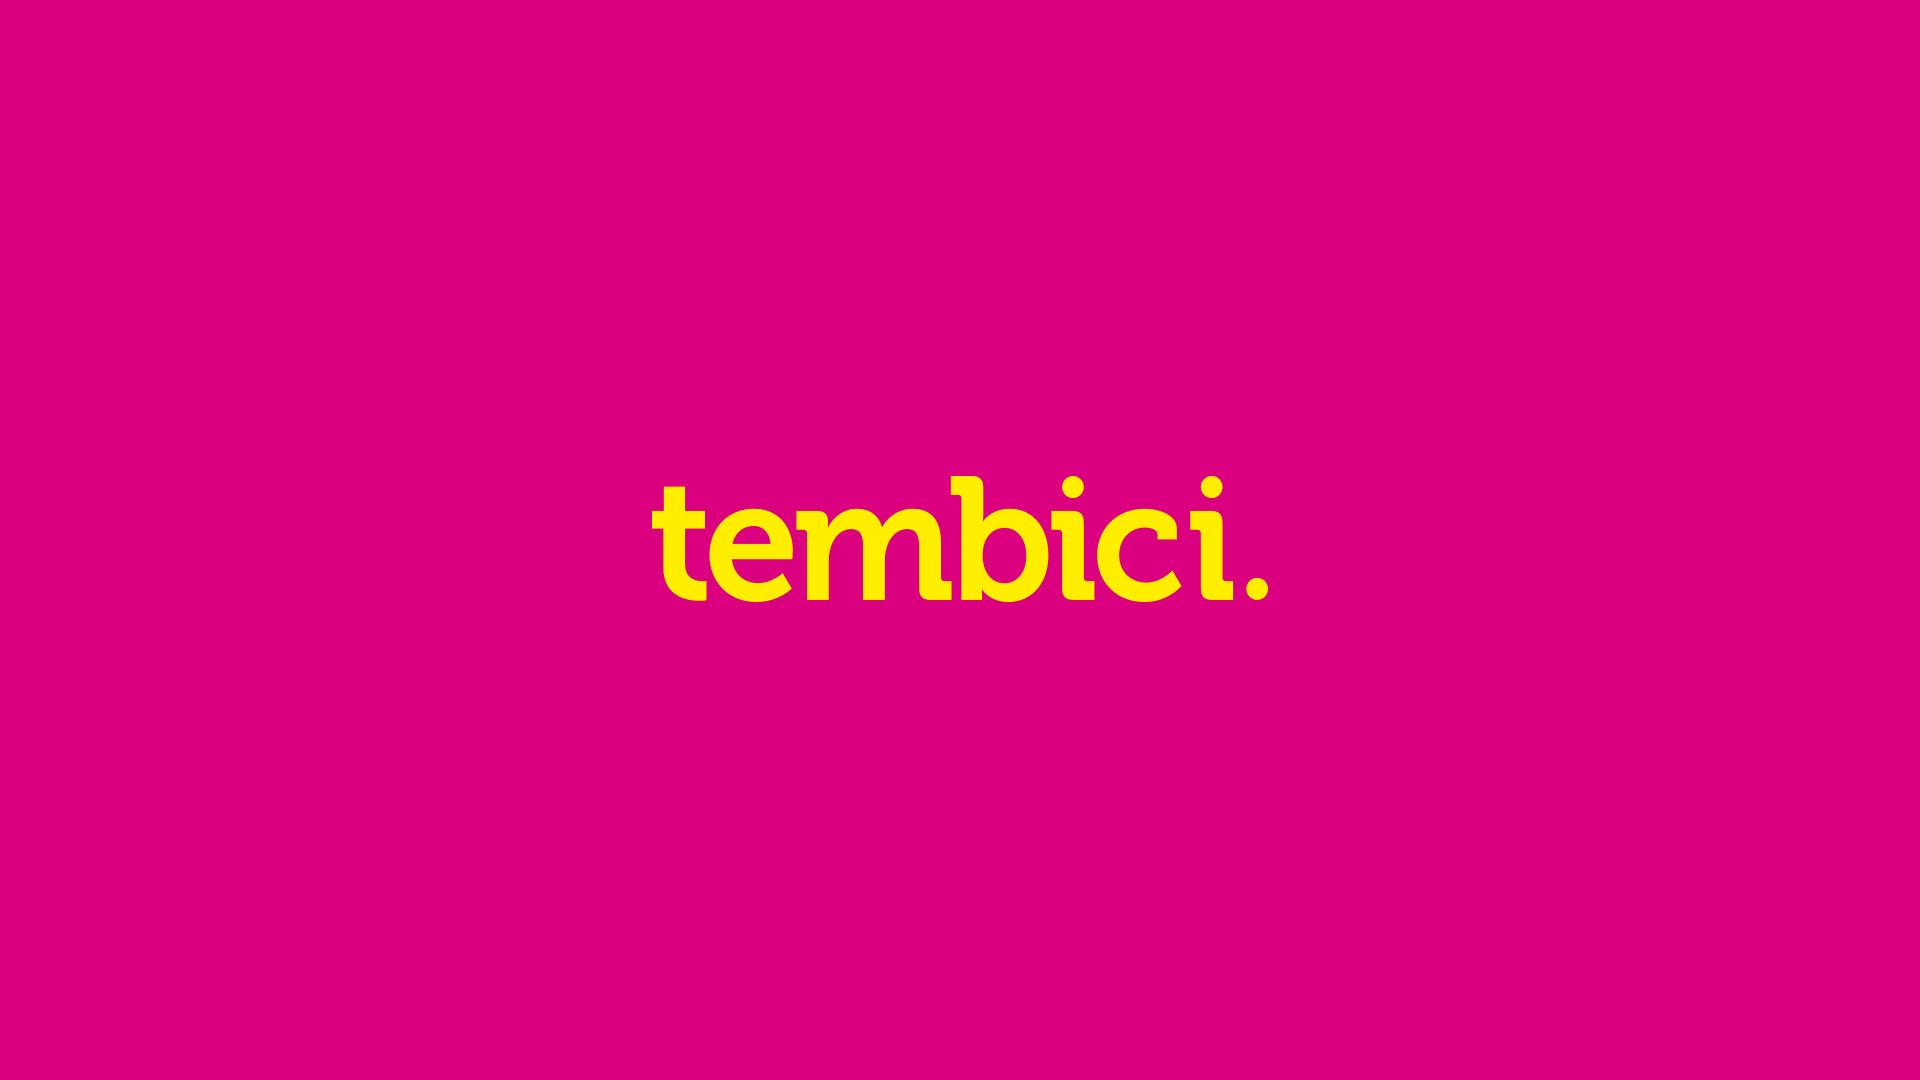 Programa de Trainee da Tembici 2022 – Como Se Inscrever, Requisitos e Benefícios